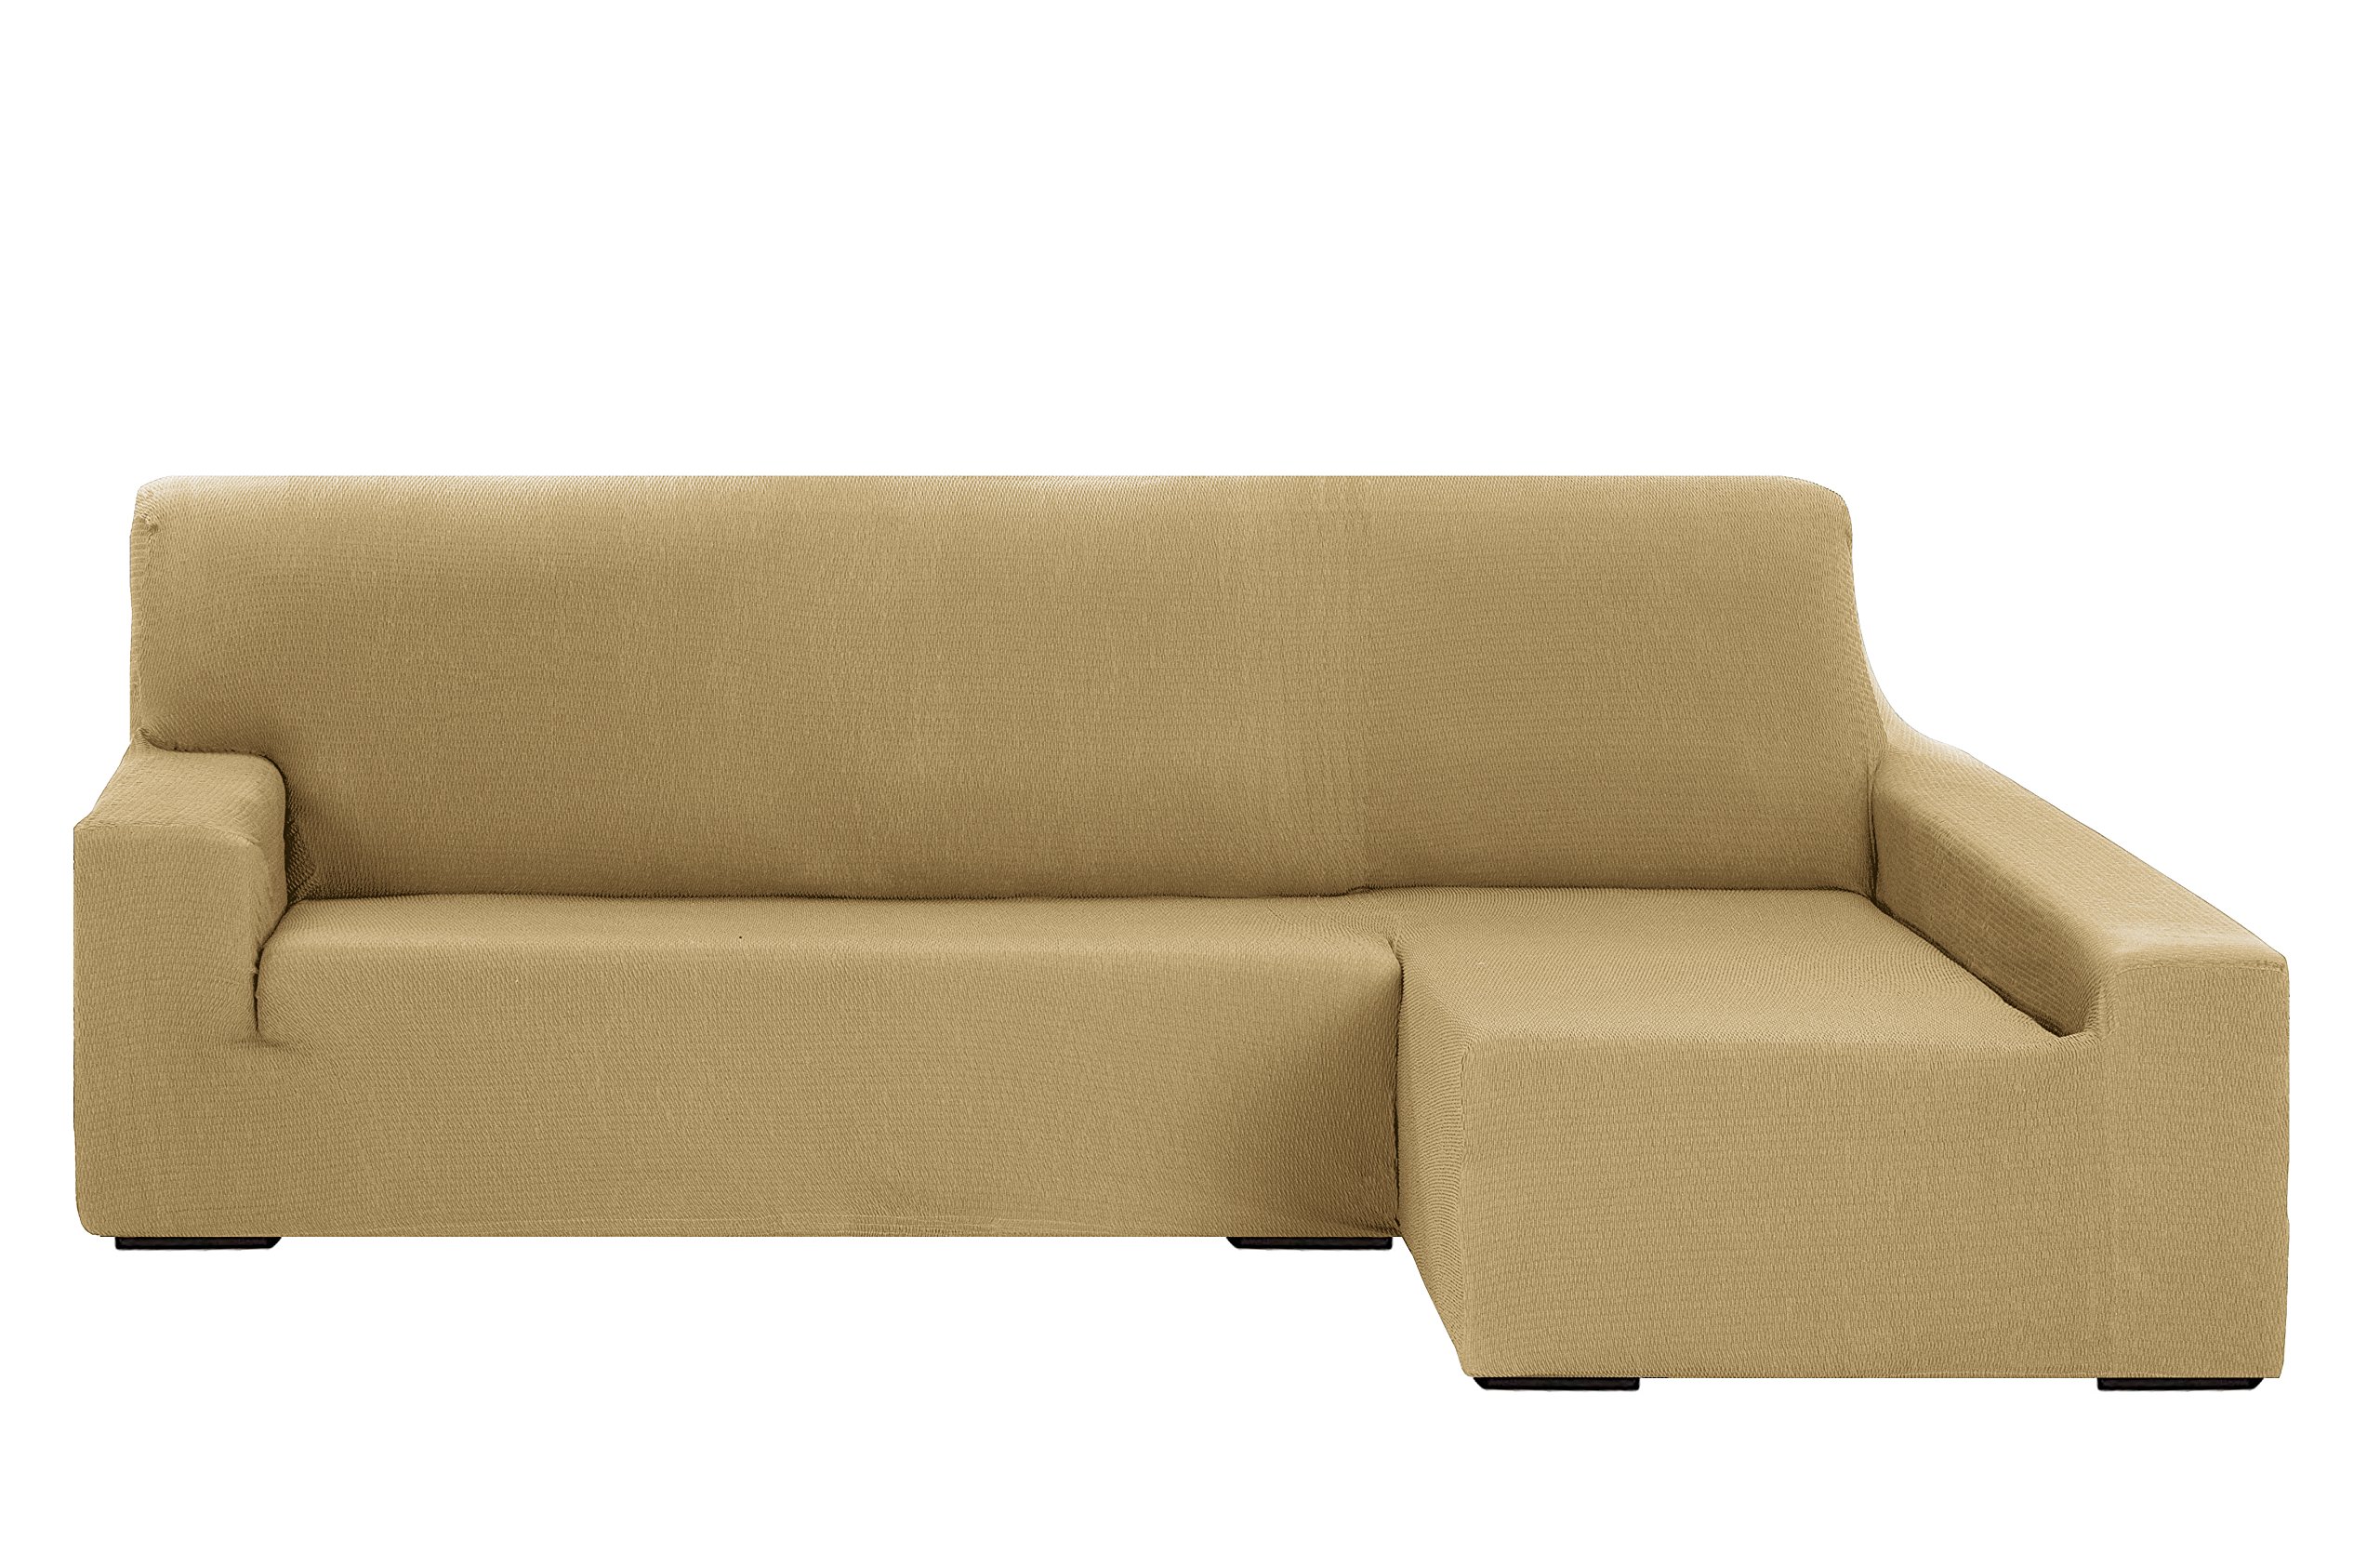 Martina Home - Elastischer Bezug für Sofa, Modell Túnez, Eckteil rechts, Stoff, Beige, 3-Sitzer, BRAZO DERECHO (visto de frente) 240 cm a 280 cm